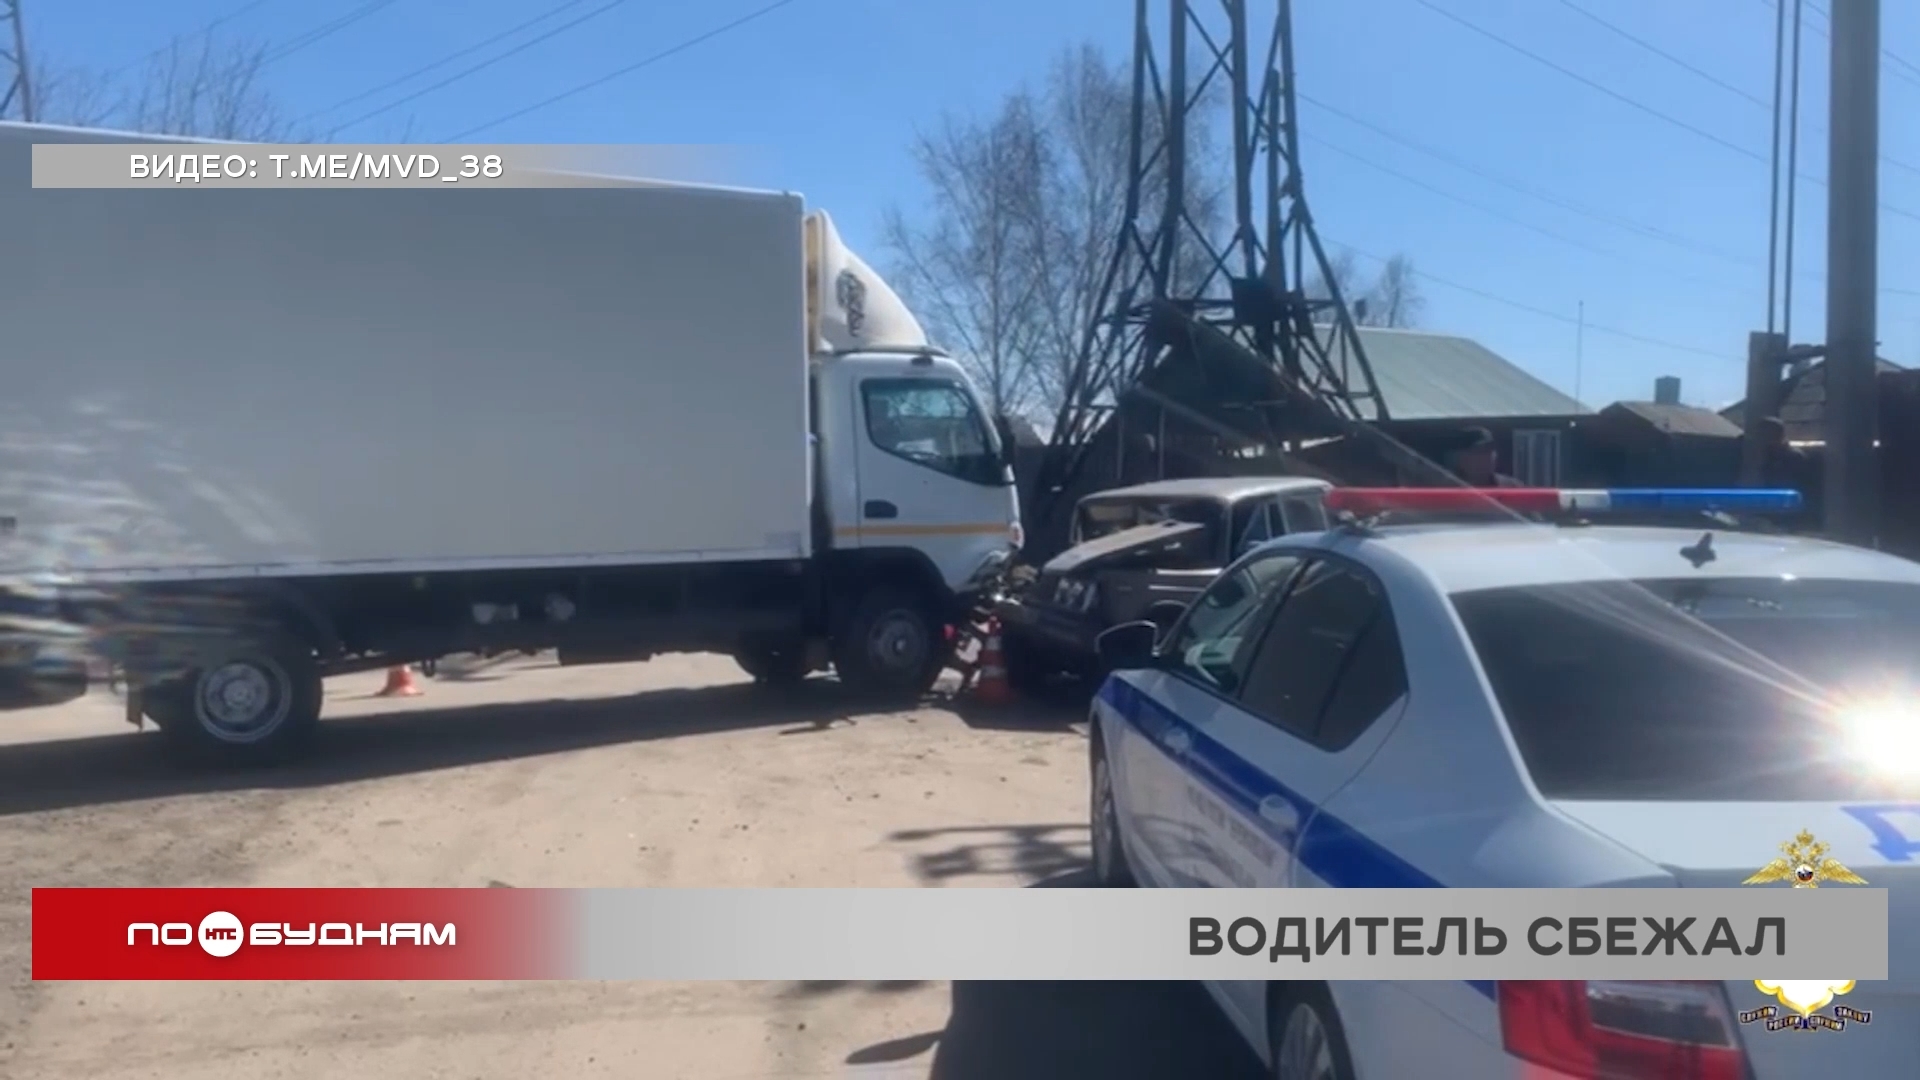 17-летняя девушка пострадала при лобовом столкновении грузовика и легкового автомобиля в Черемхове